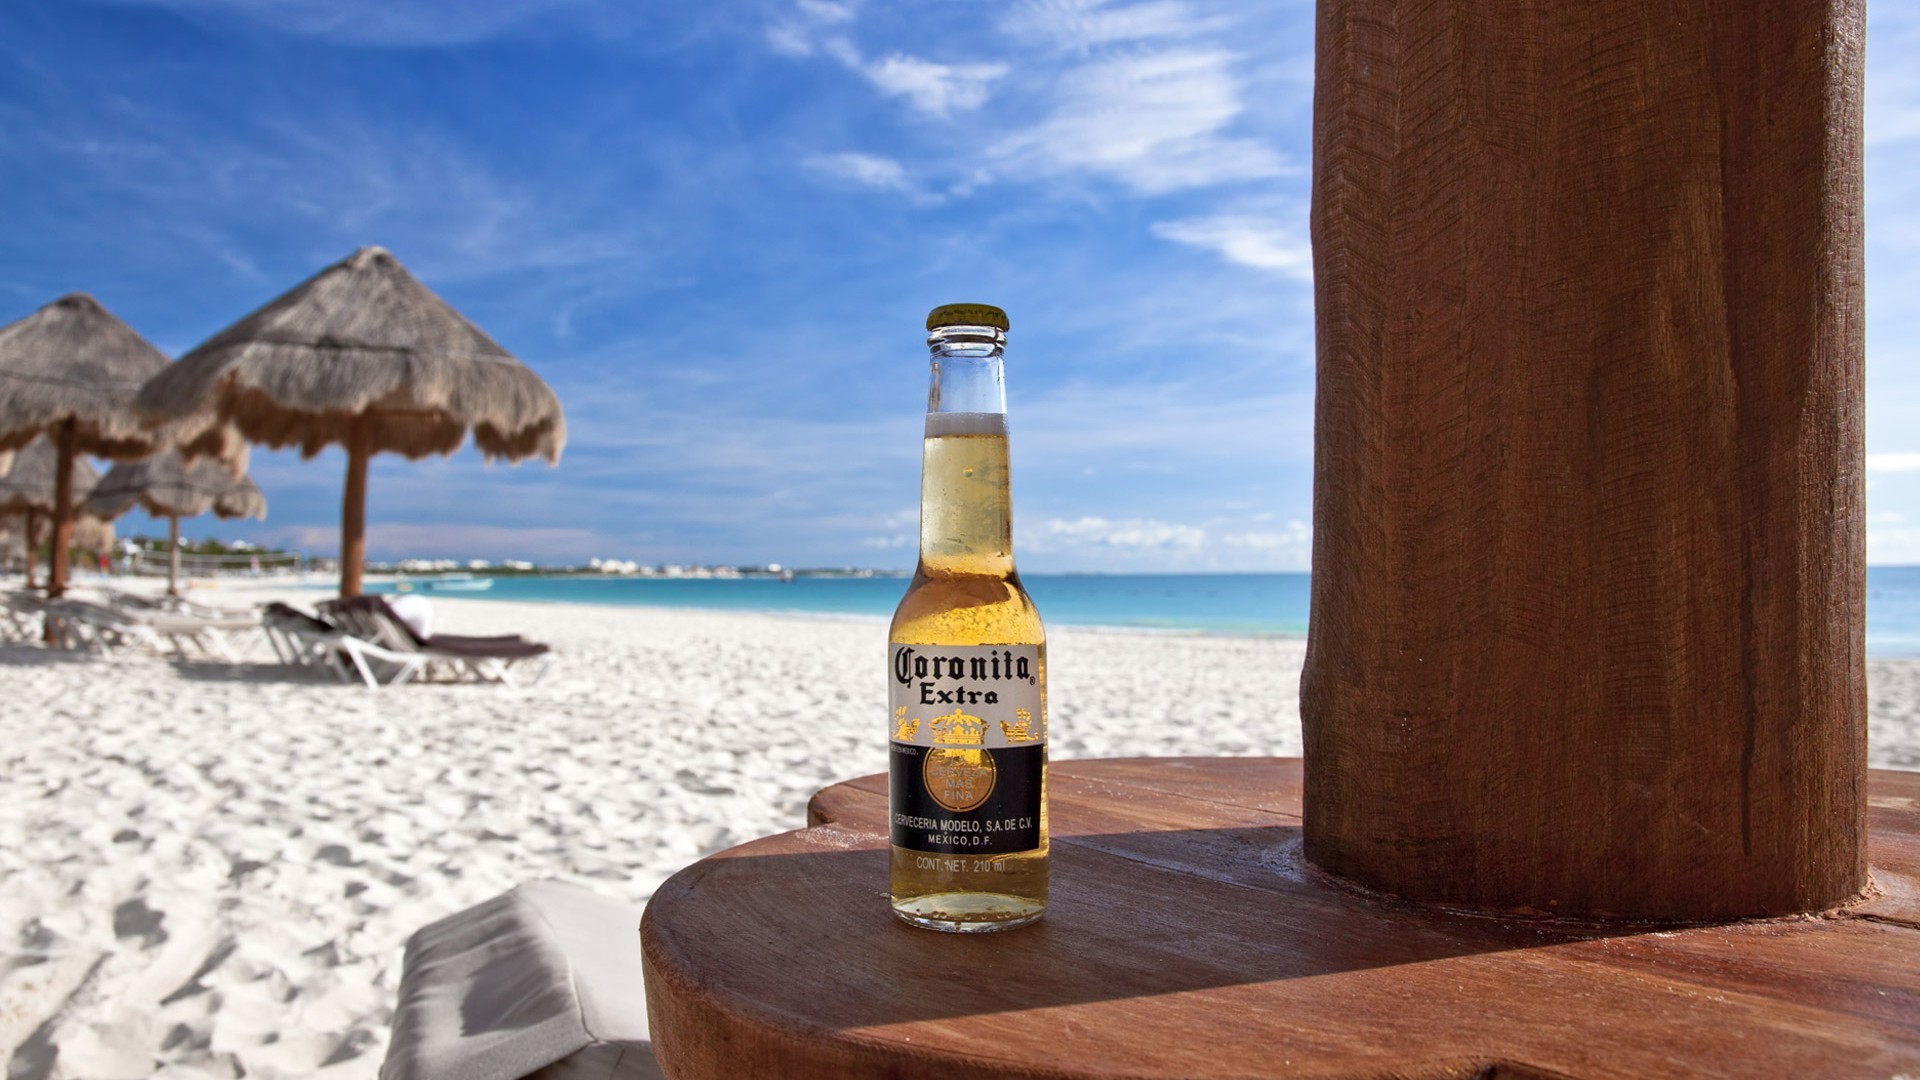 Beer Bottel Beach View - Cerveza Corona En La Playa , HD Wallpaper & Backgrounds